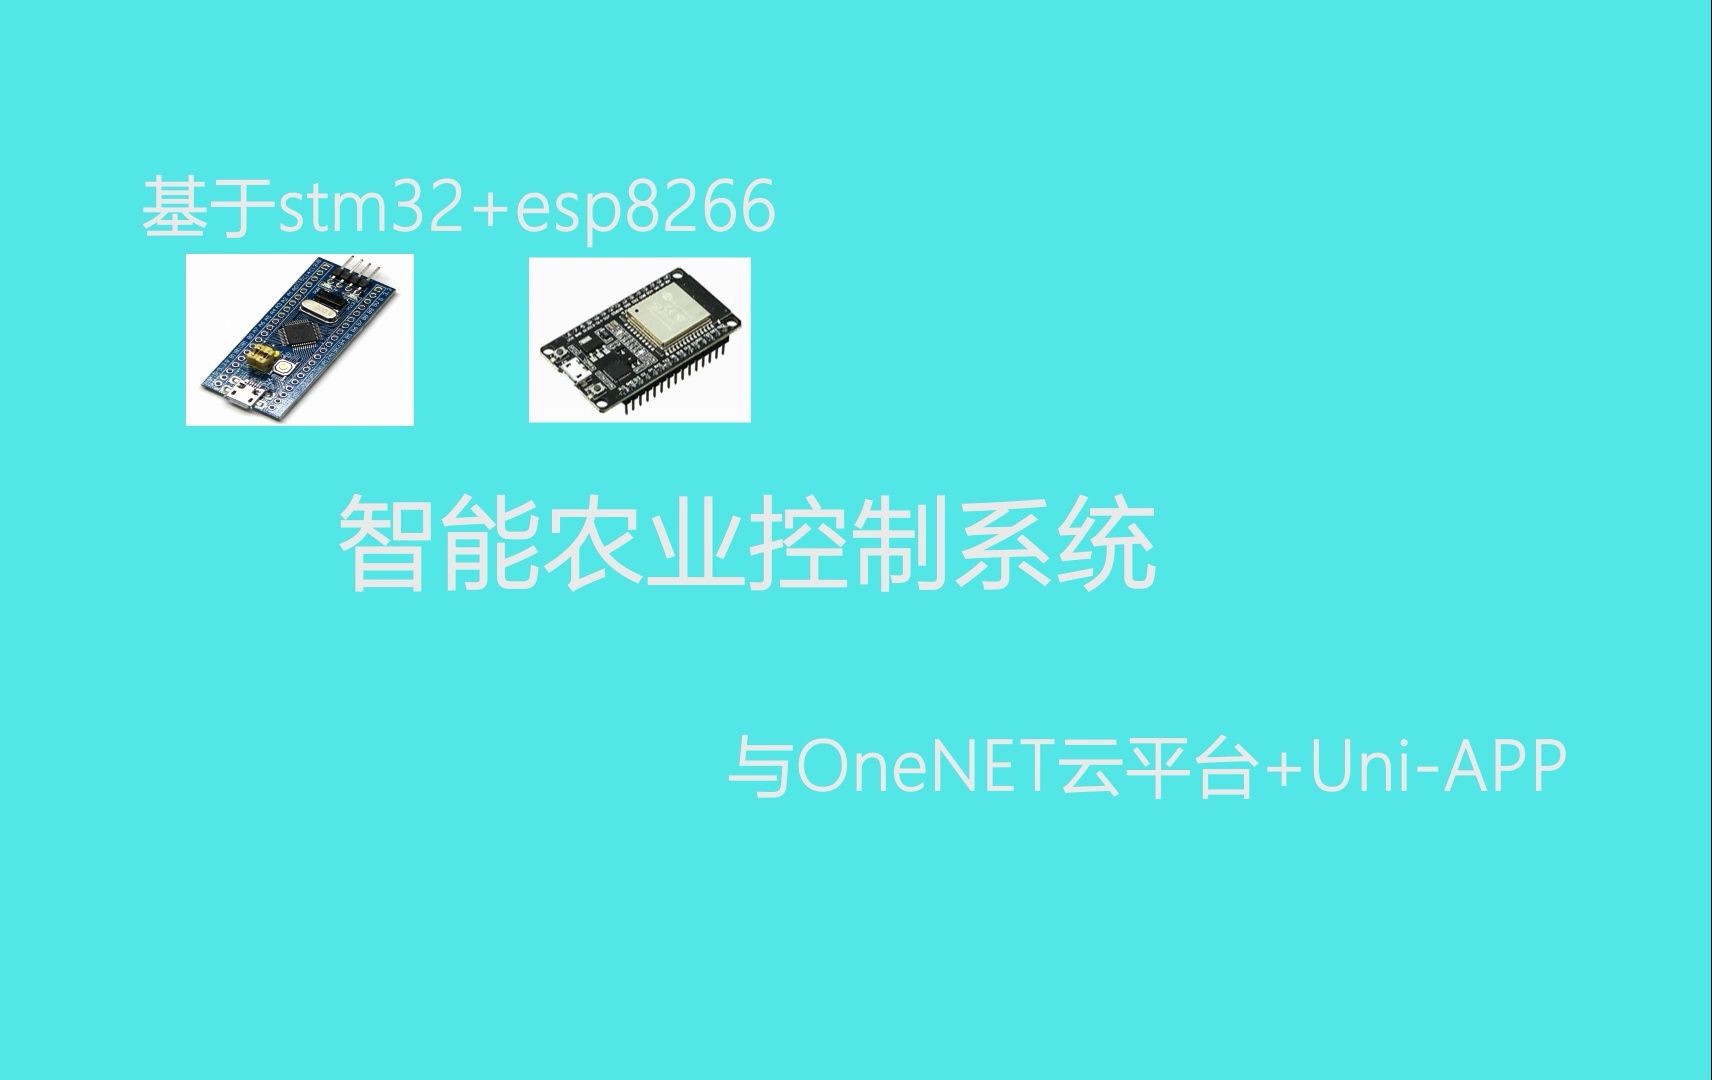 基于stm32与esp8266连接OneNET云平台的智能农业控制系统